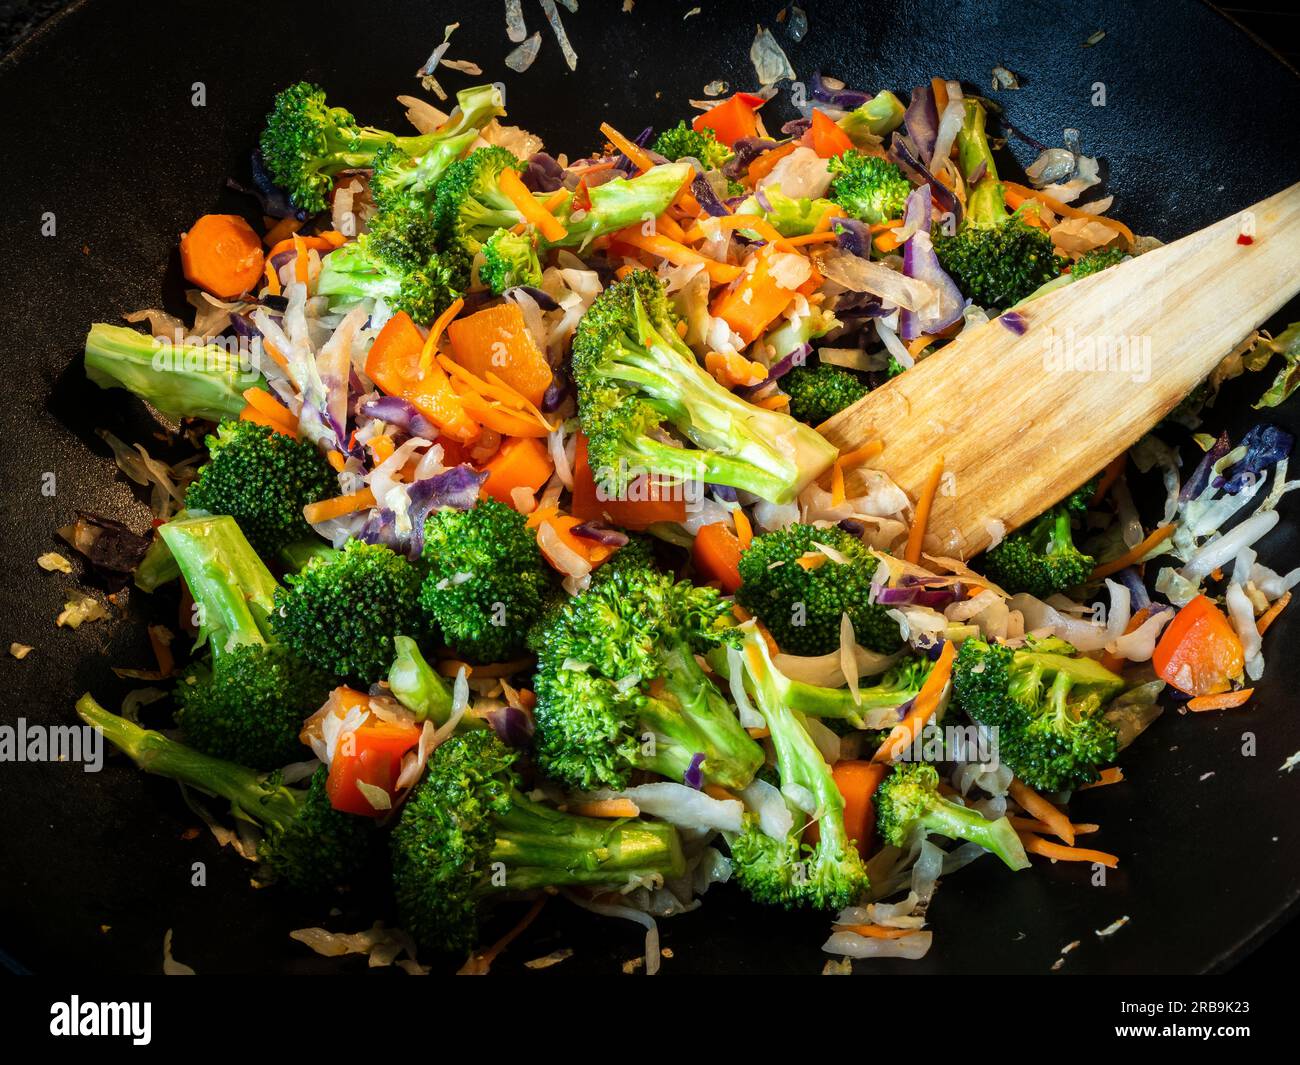 Dans un wok en fonte, un sauté végétarien appétissant et nourrissant ravive les sens. Débordant de brocoli vibrant, carottes, et ca Banque D'Images